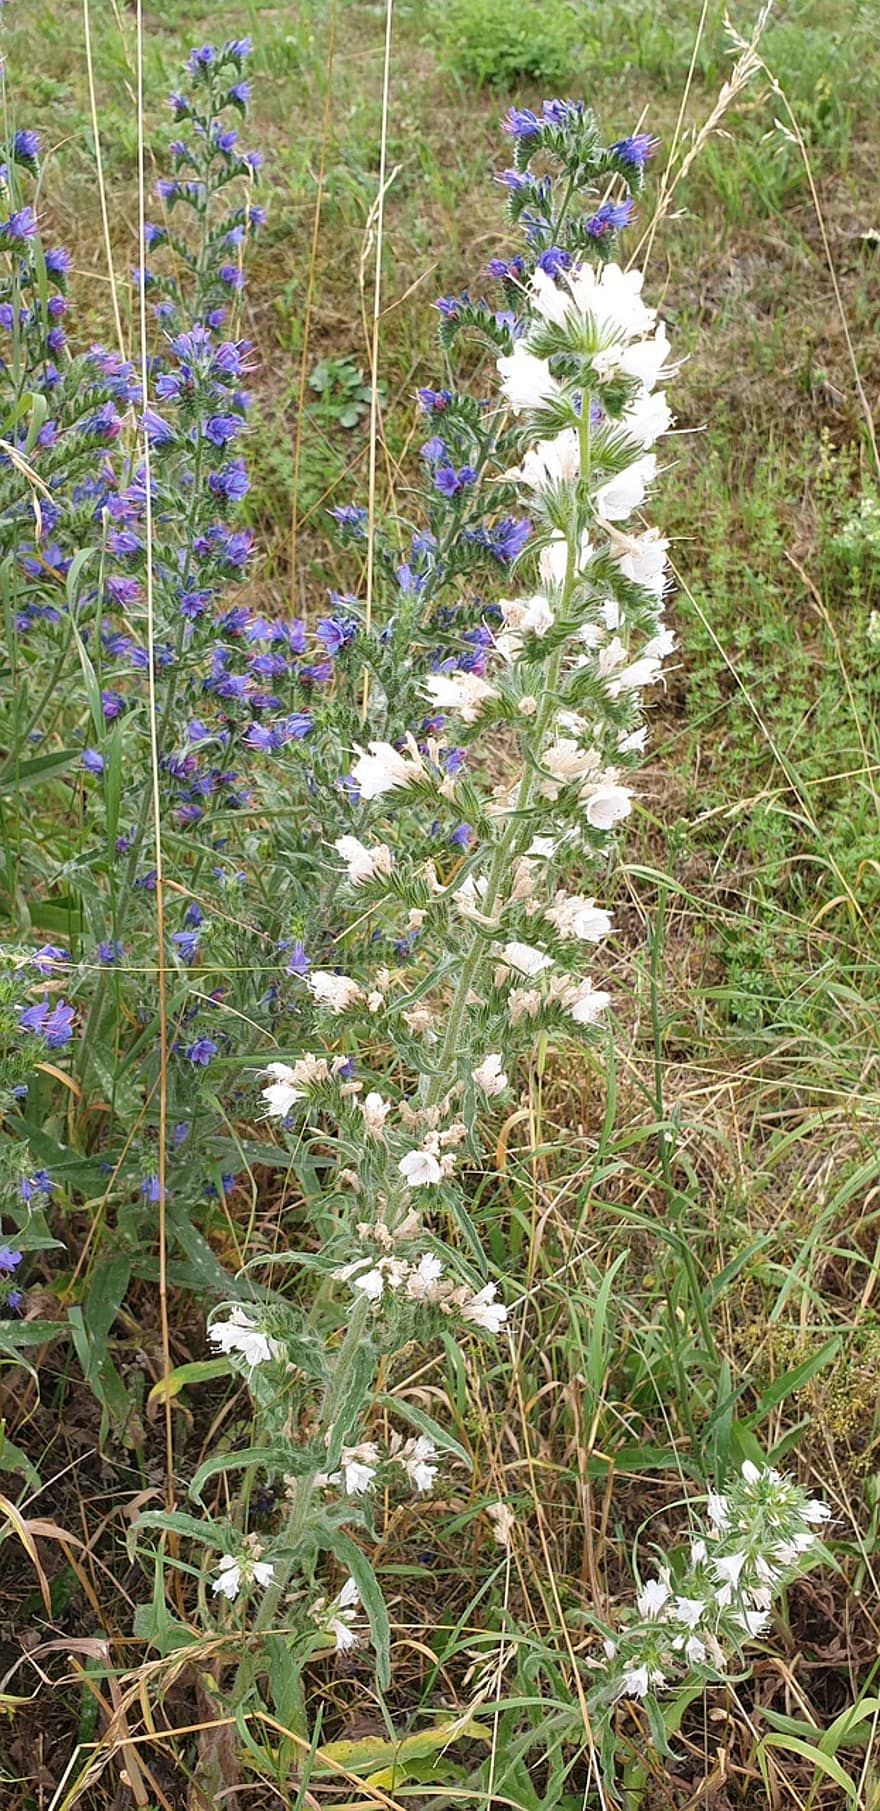 natternkopf ordinaire, Tête de serpent blanc, fleur sauvage, fleurs, blanc, echium vulgare, tête de serpent, bleu, bleu natternkopf, échium, raublattgewächs